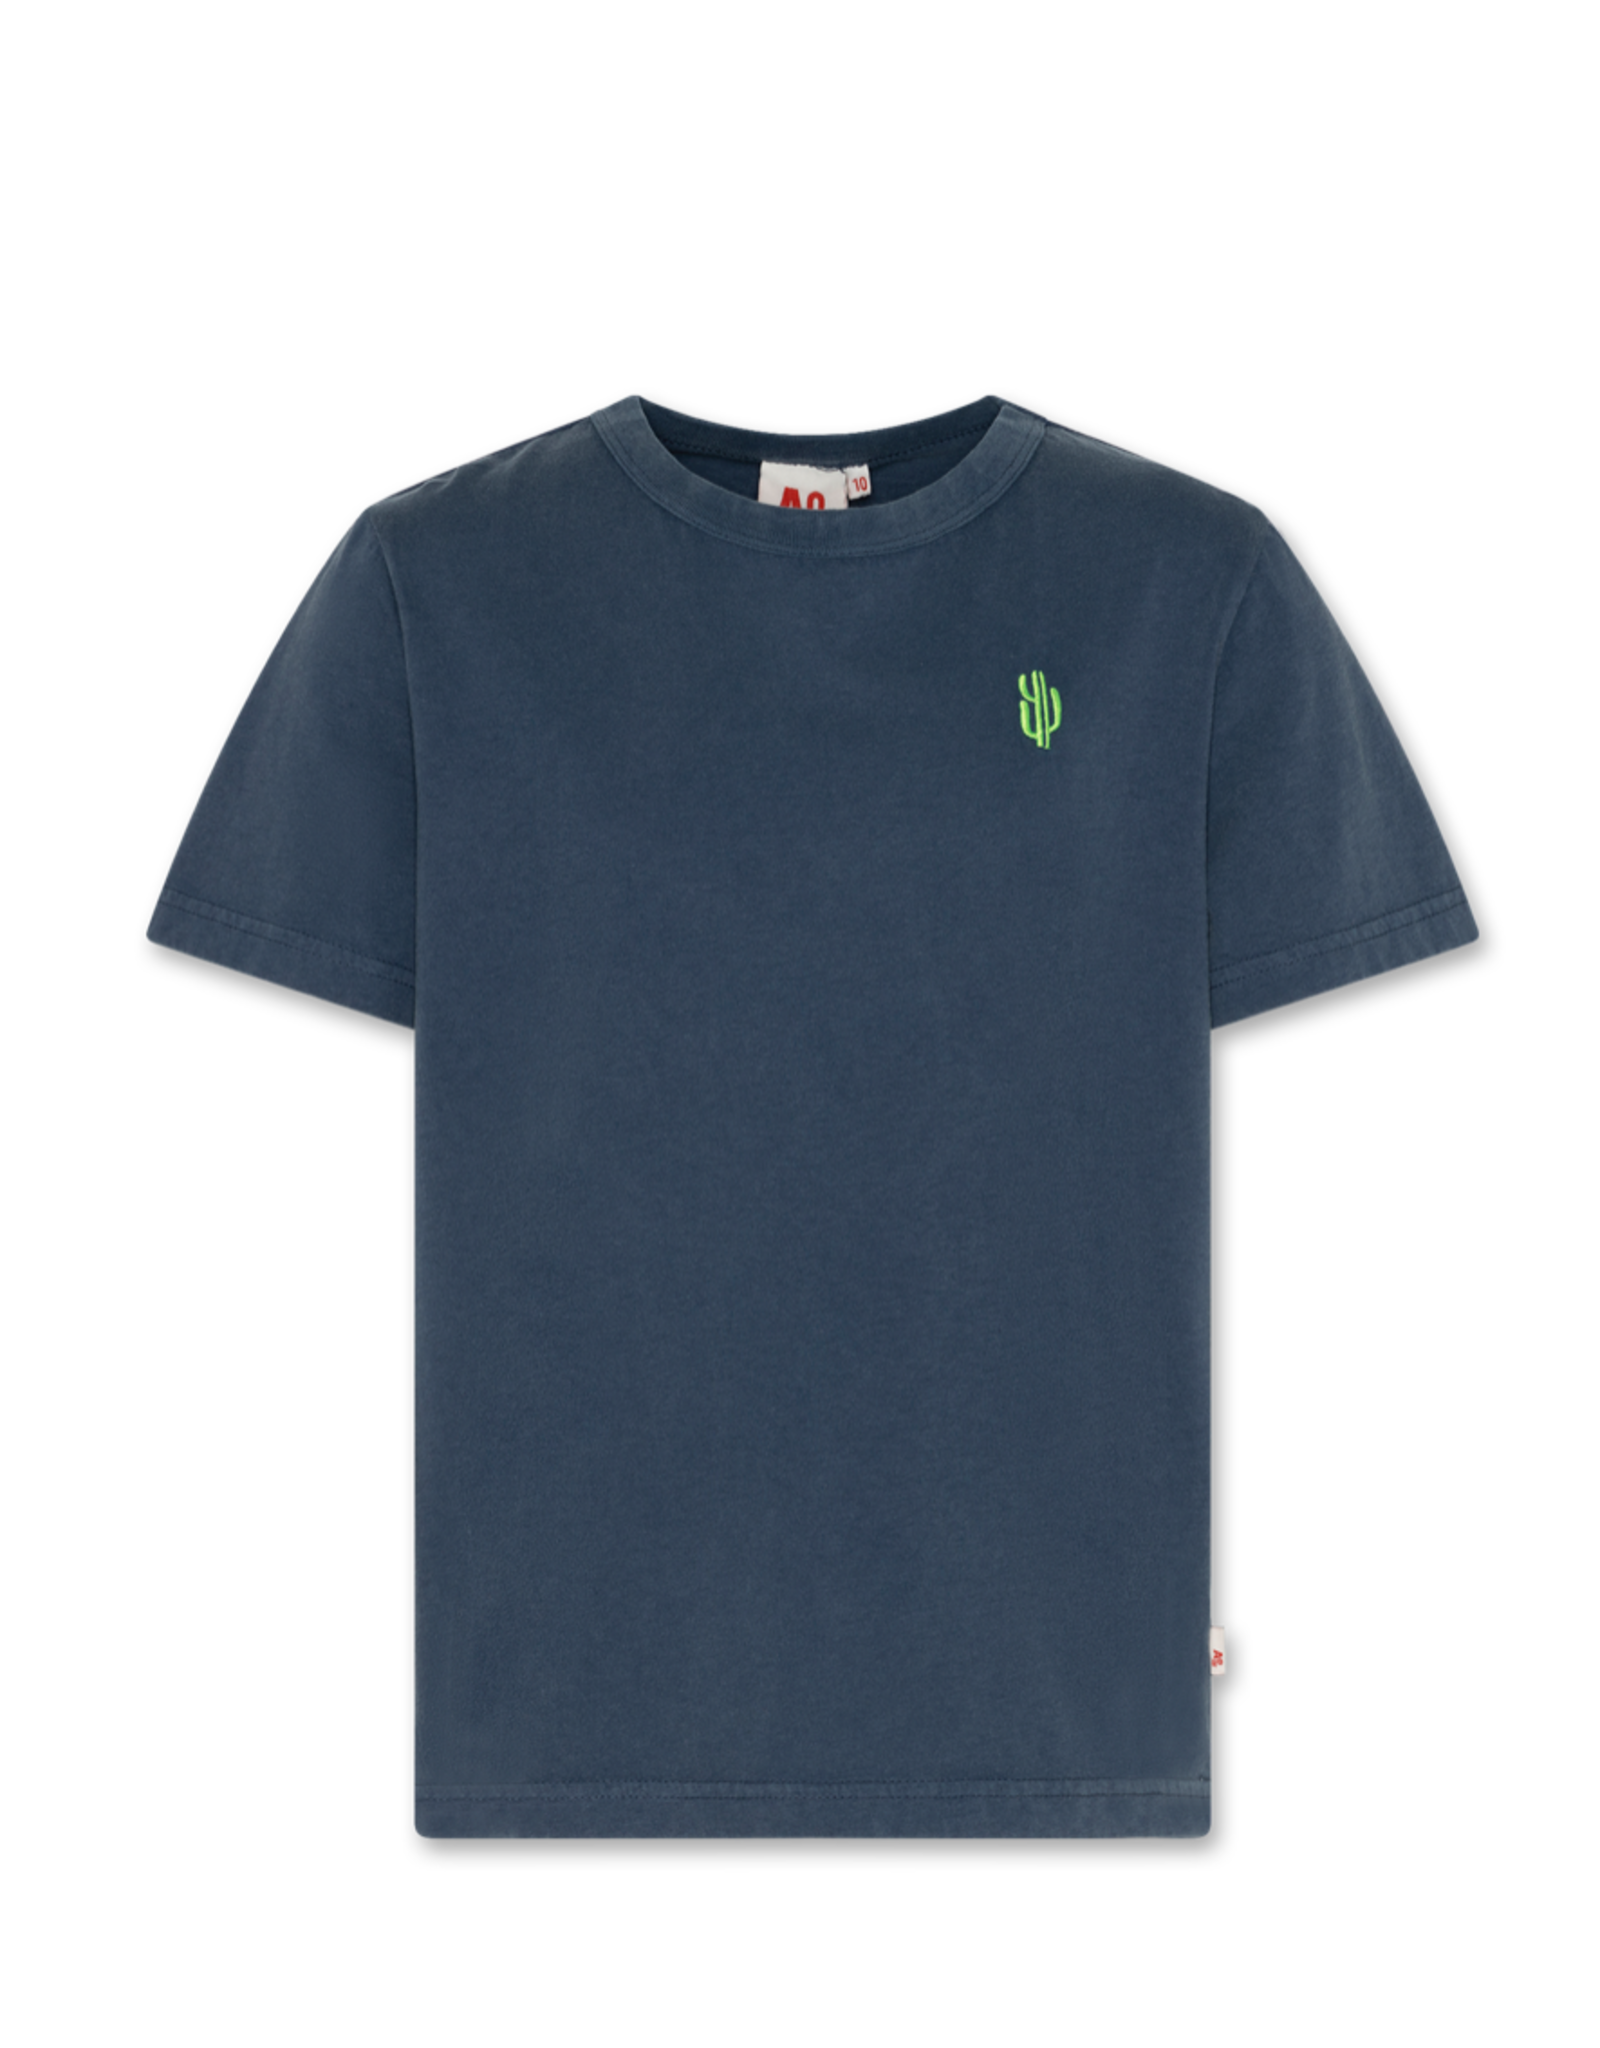 A076 t-shirt mat garment dye indigo